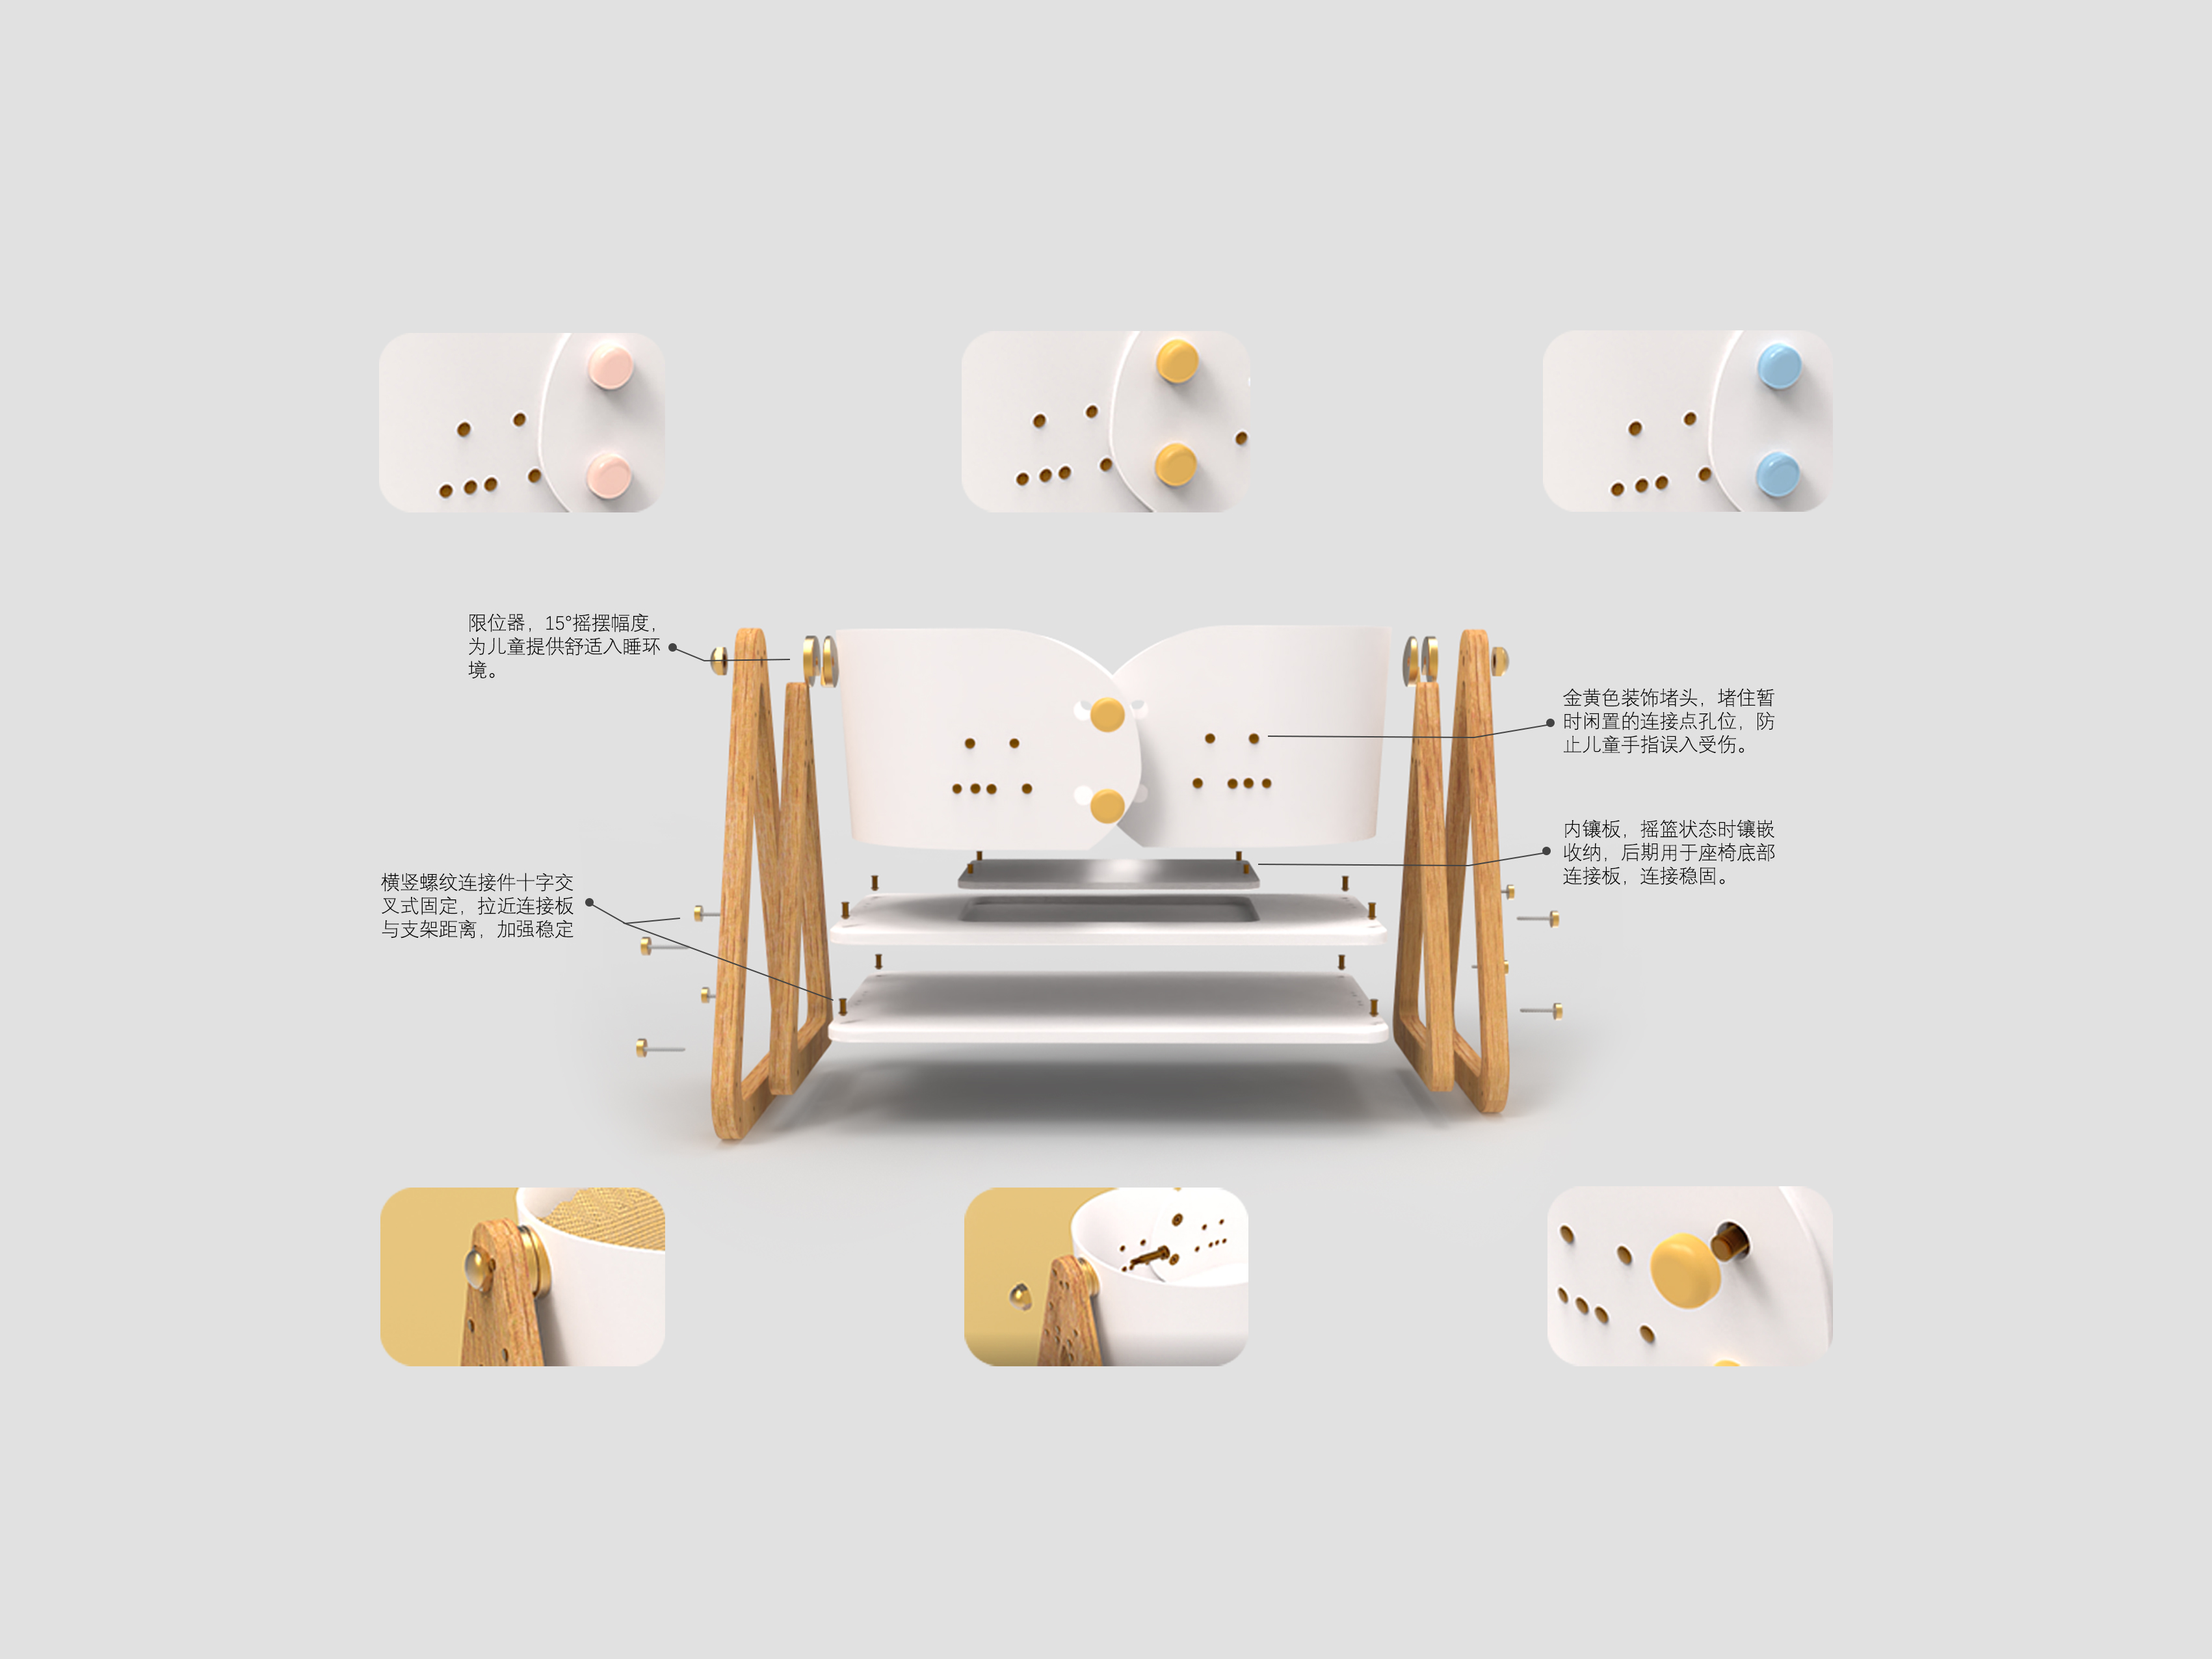 郑州轻工业大学2020年产品设计系毕业设计一路童行成长家具